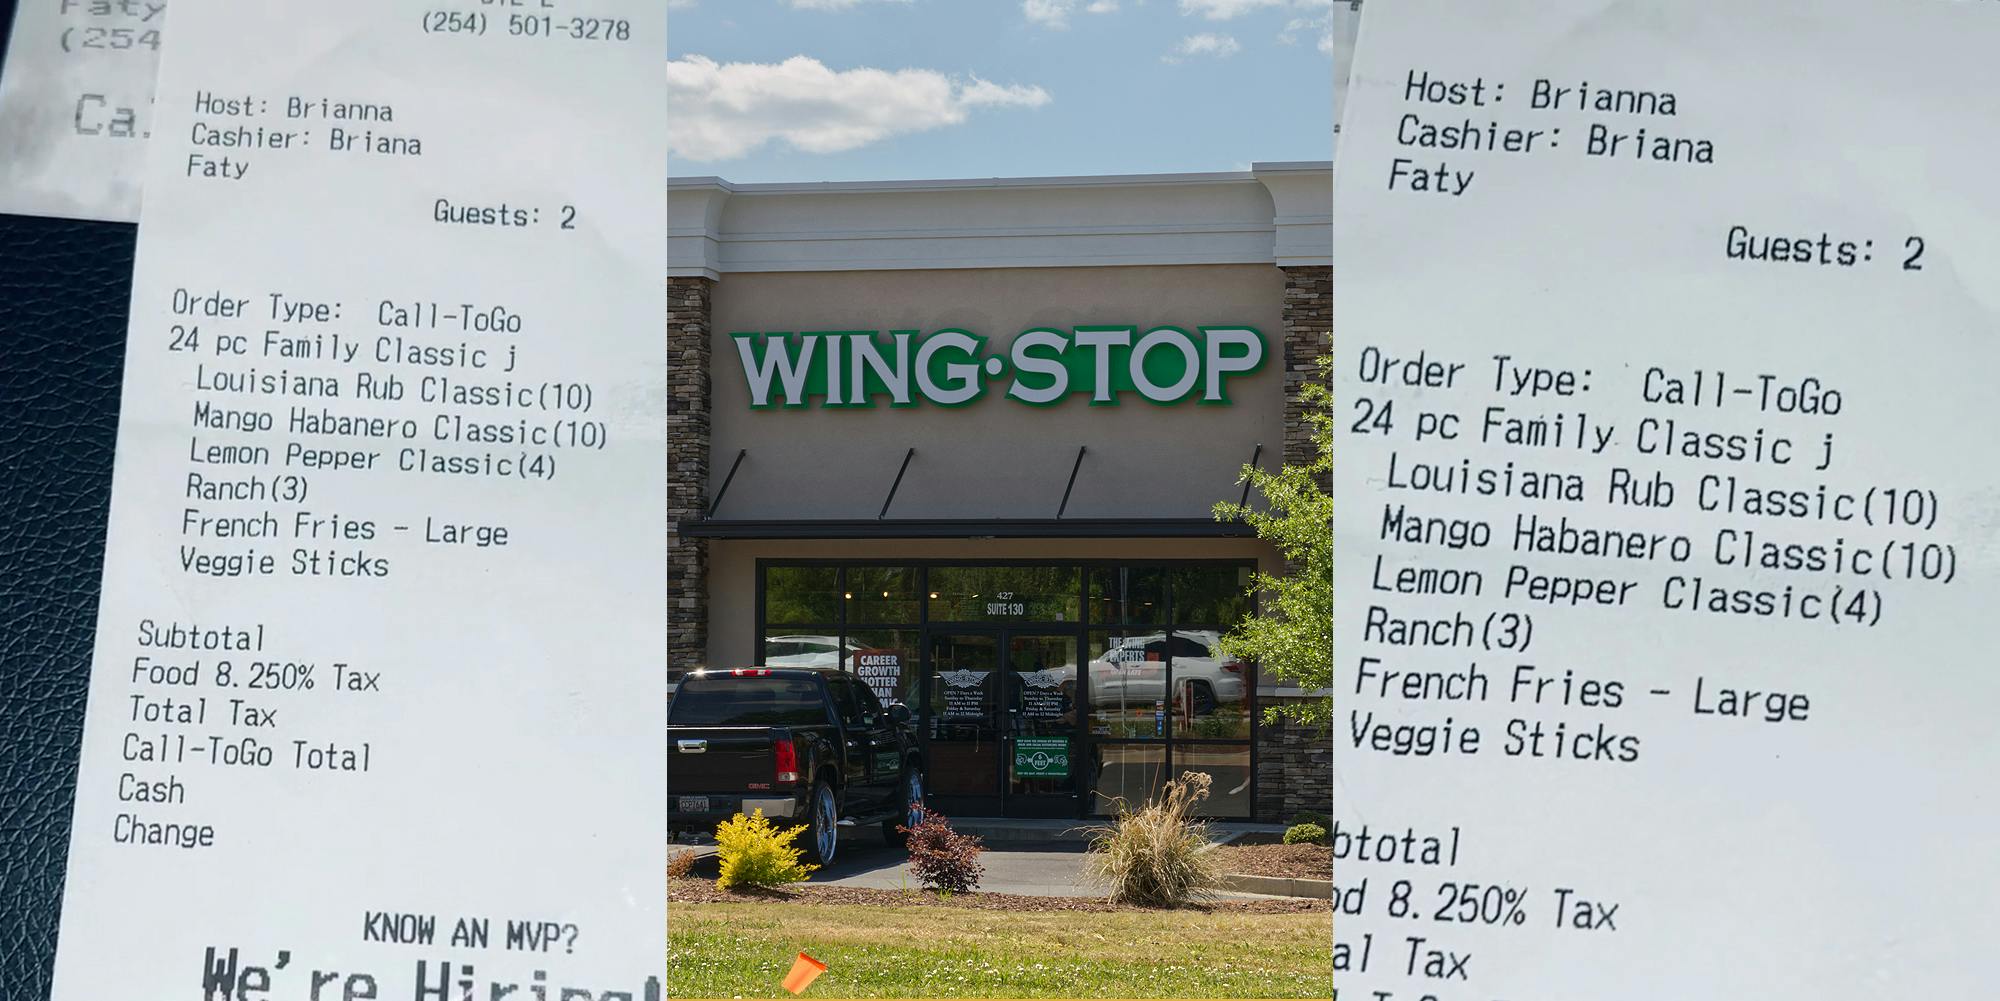 Wingstop receipt with name written as "Faty" (l) Wingstop sign on building (c) Wingstop receipt with name written as "Faty" (r)